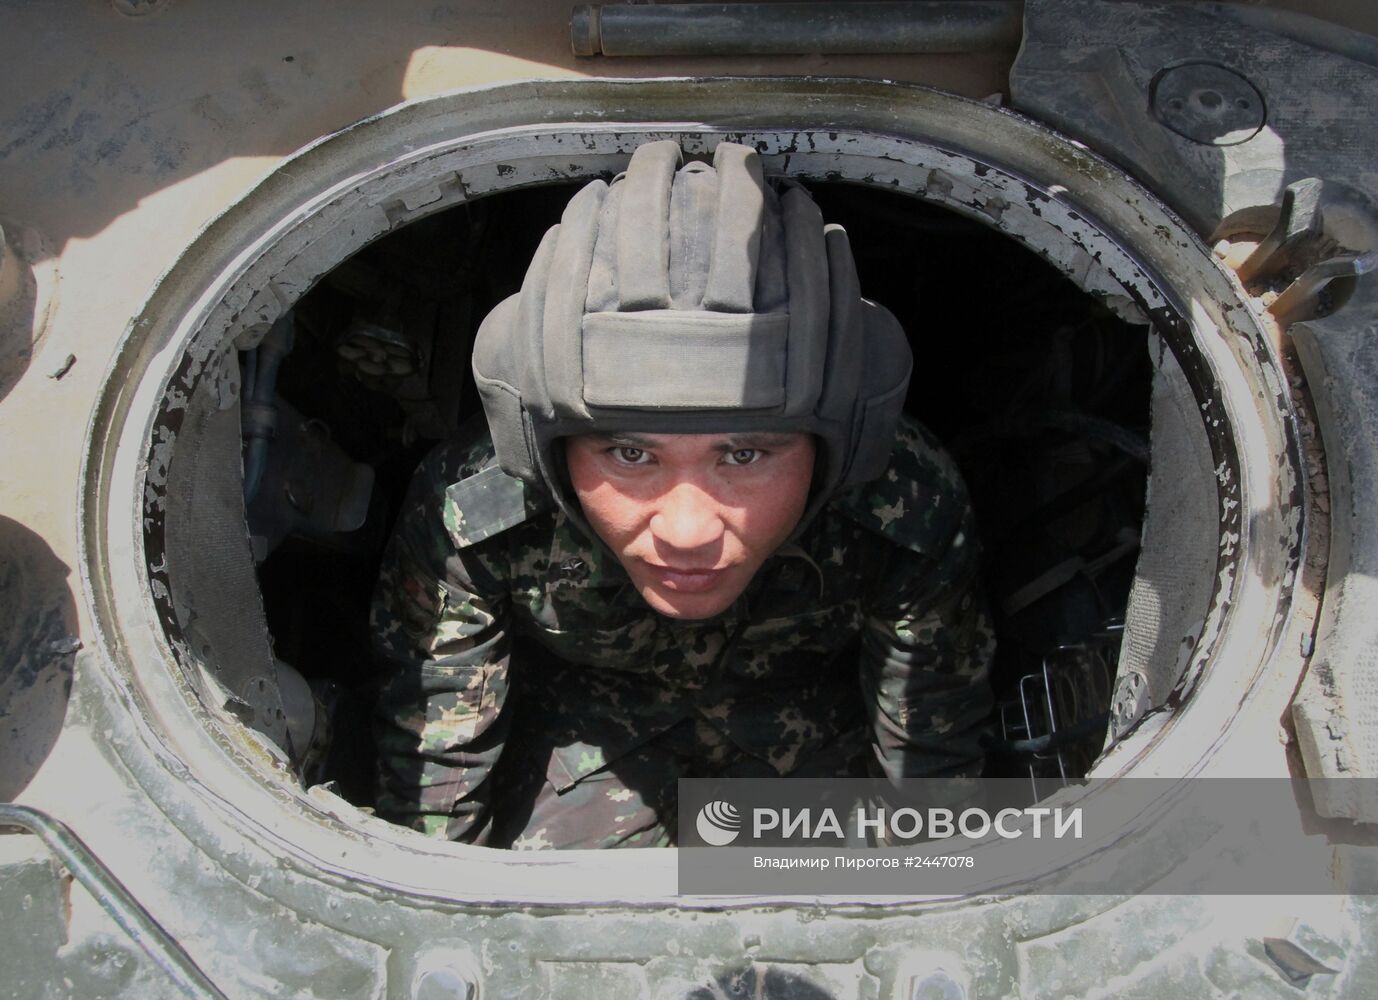 Тренировка танкового полка Киргизии перед "Танковым биатлоном-2014"